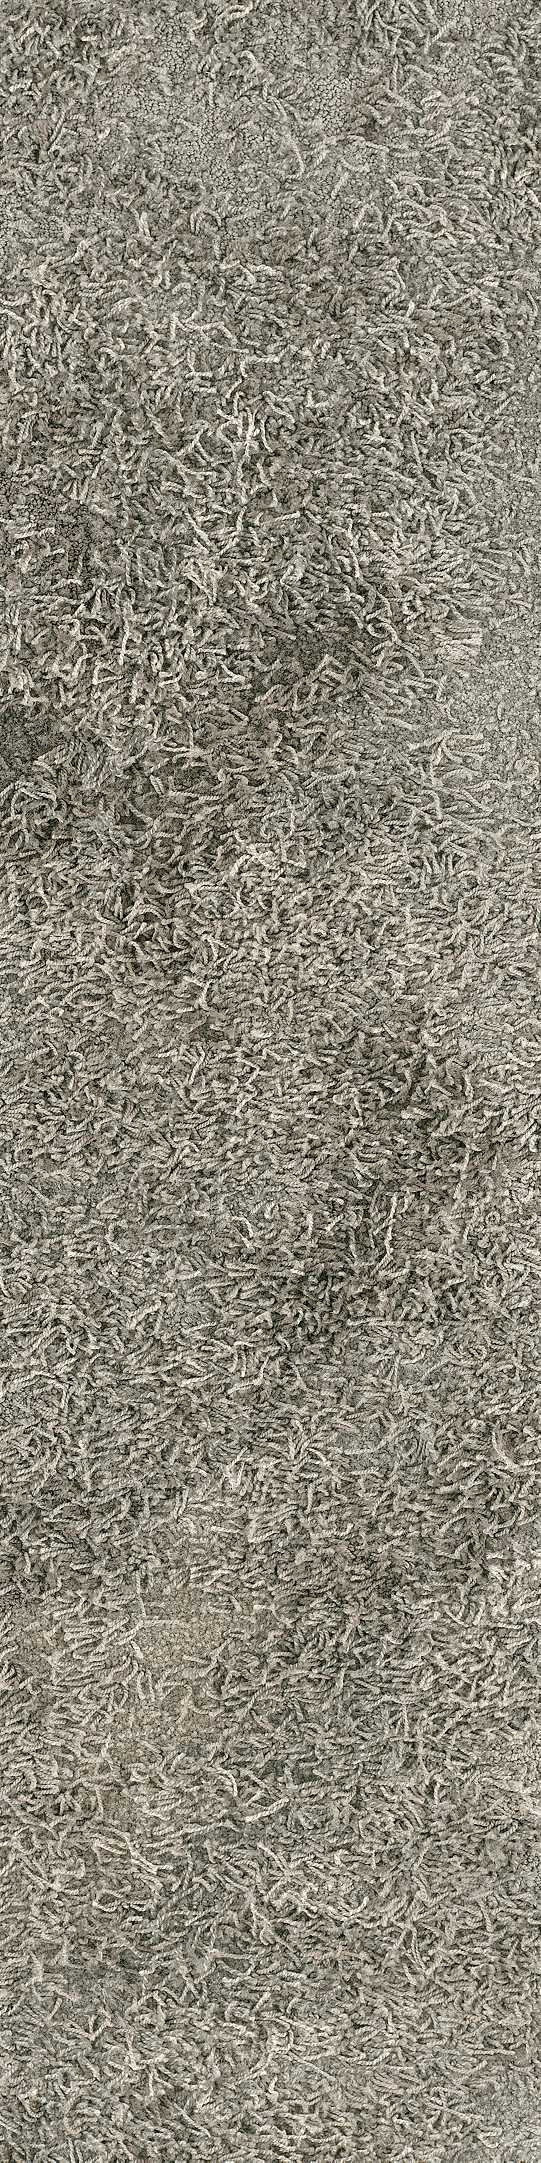 Shaw Primitive Carpet Tile Porous